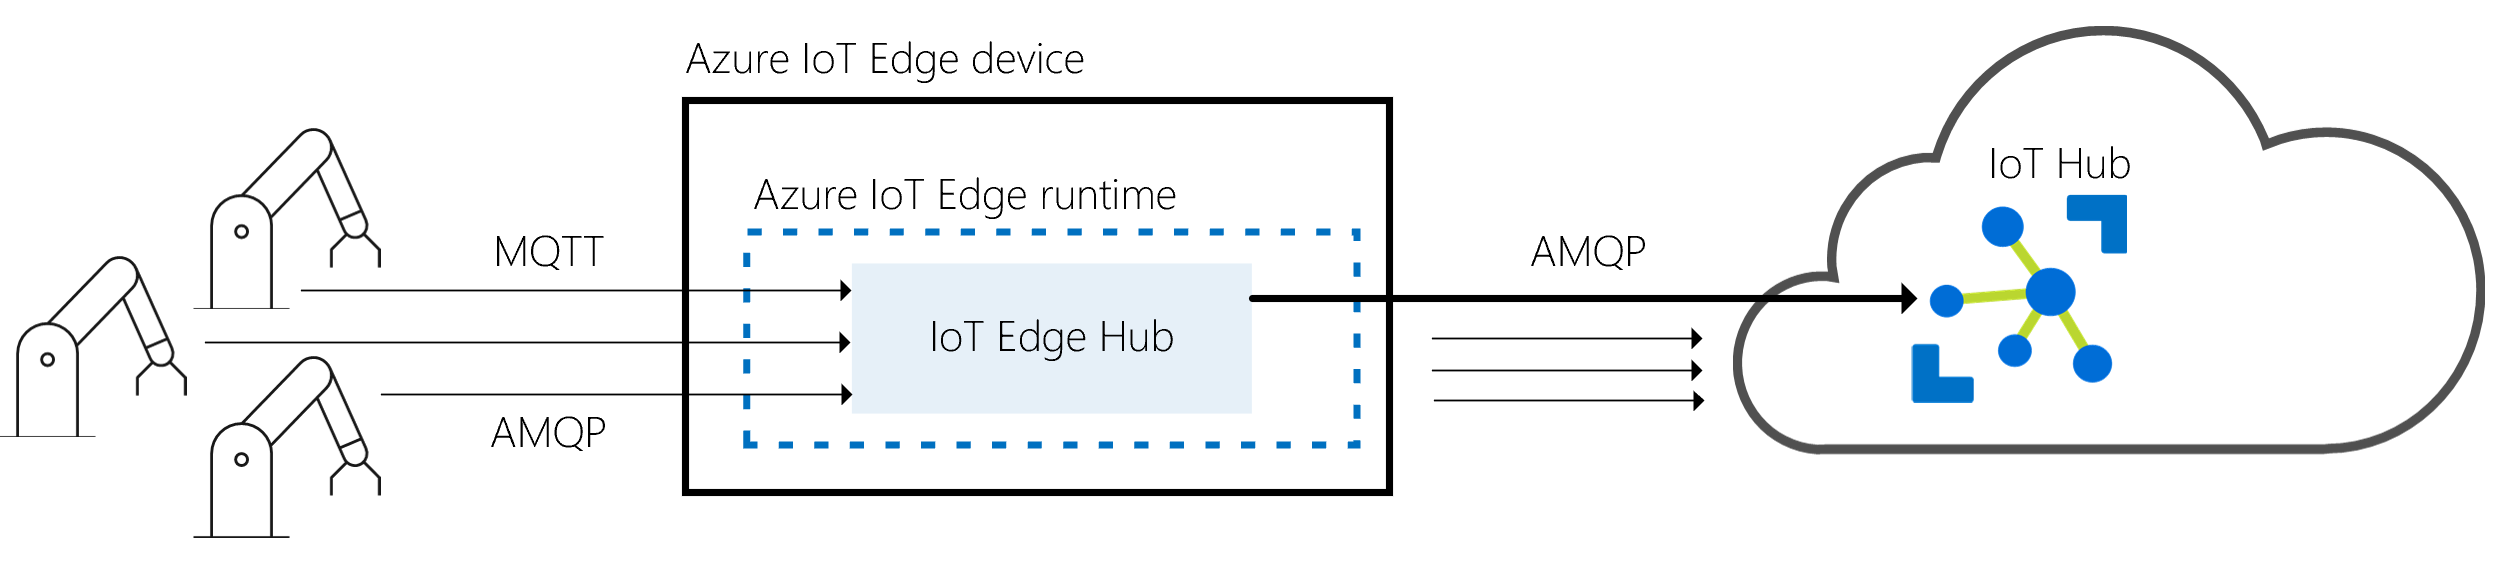 Capture d’écran montrant les relations avec le hub IOT Edge en tant que passerelle entre les appareils physiques et IOT Hub.